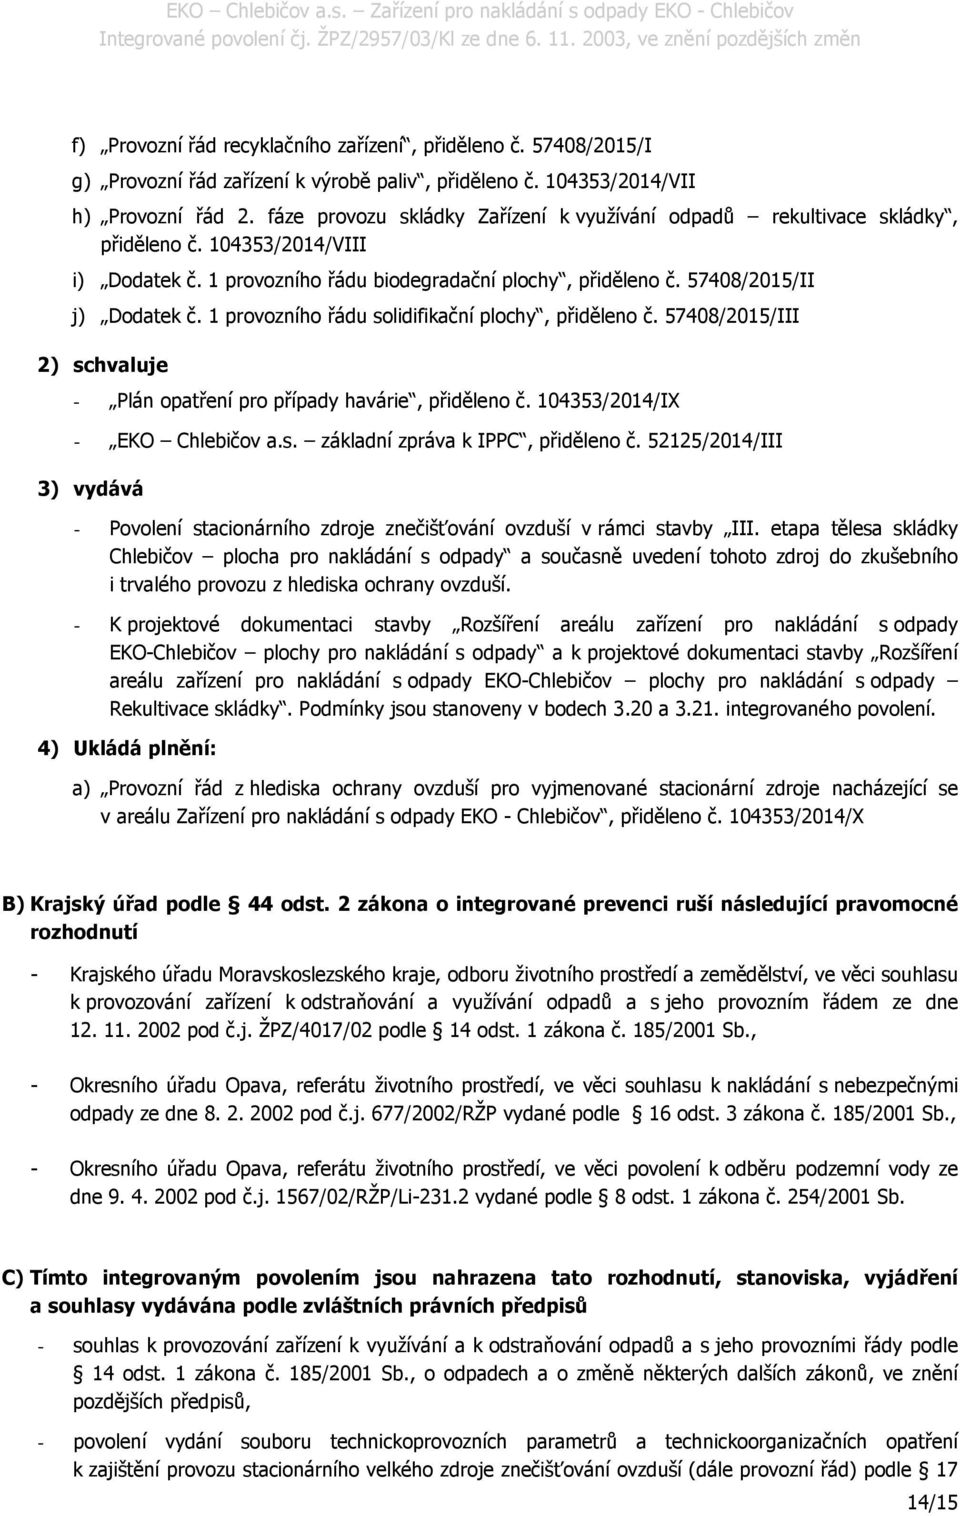 1 provozního řádu solidifikační plochy, přiděleno č. 57408/2015/III 2) schvaluje - Plán opatření pro případy havárie, přiděleno č. 104353/2014/IX - EKO Chlebičov a.s. základní zpráva k IPPC, přiděleno č.